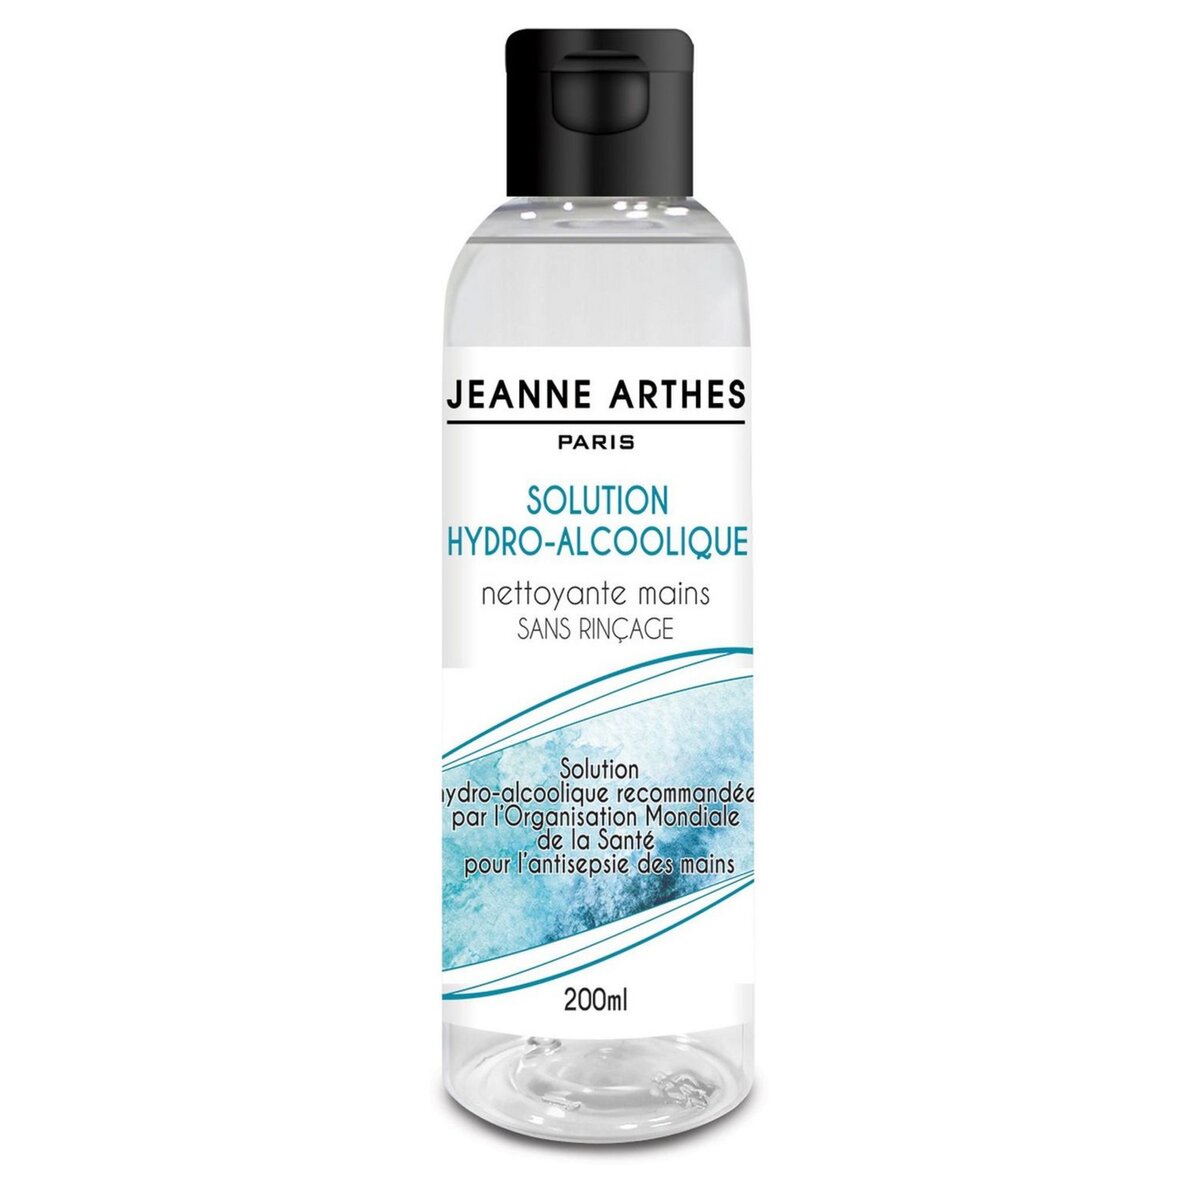 JEANNE ARTHES Solution Hydroalcoolique nettoyante mains - 200 ml